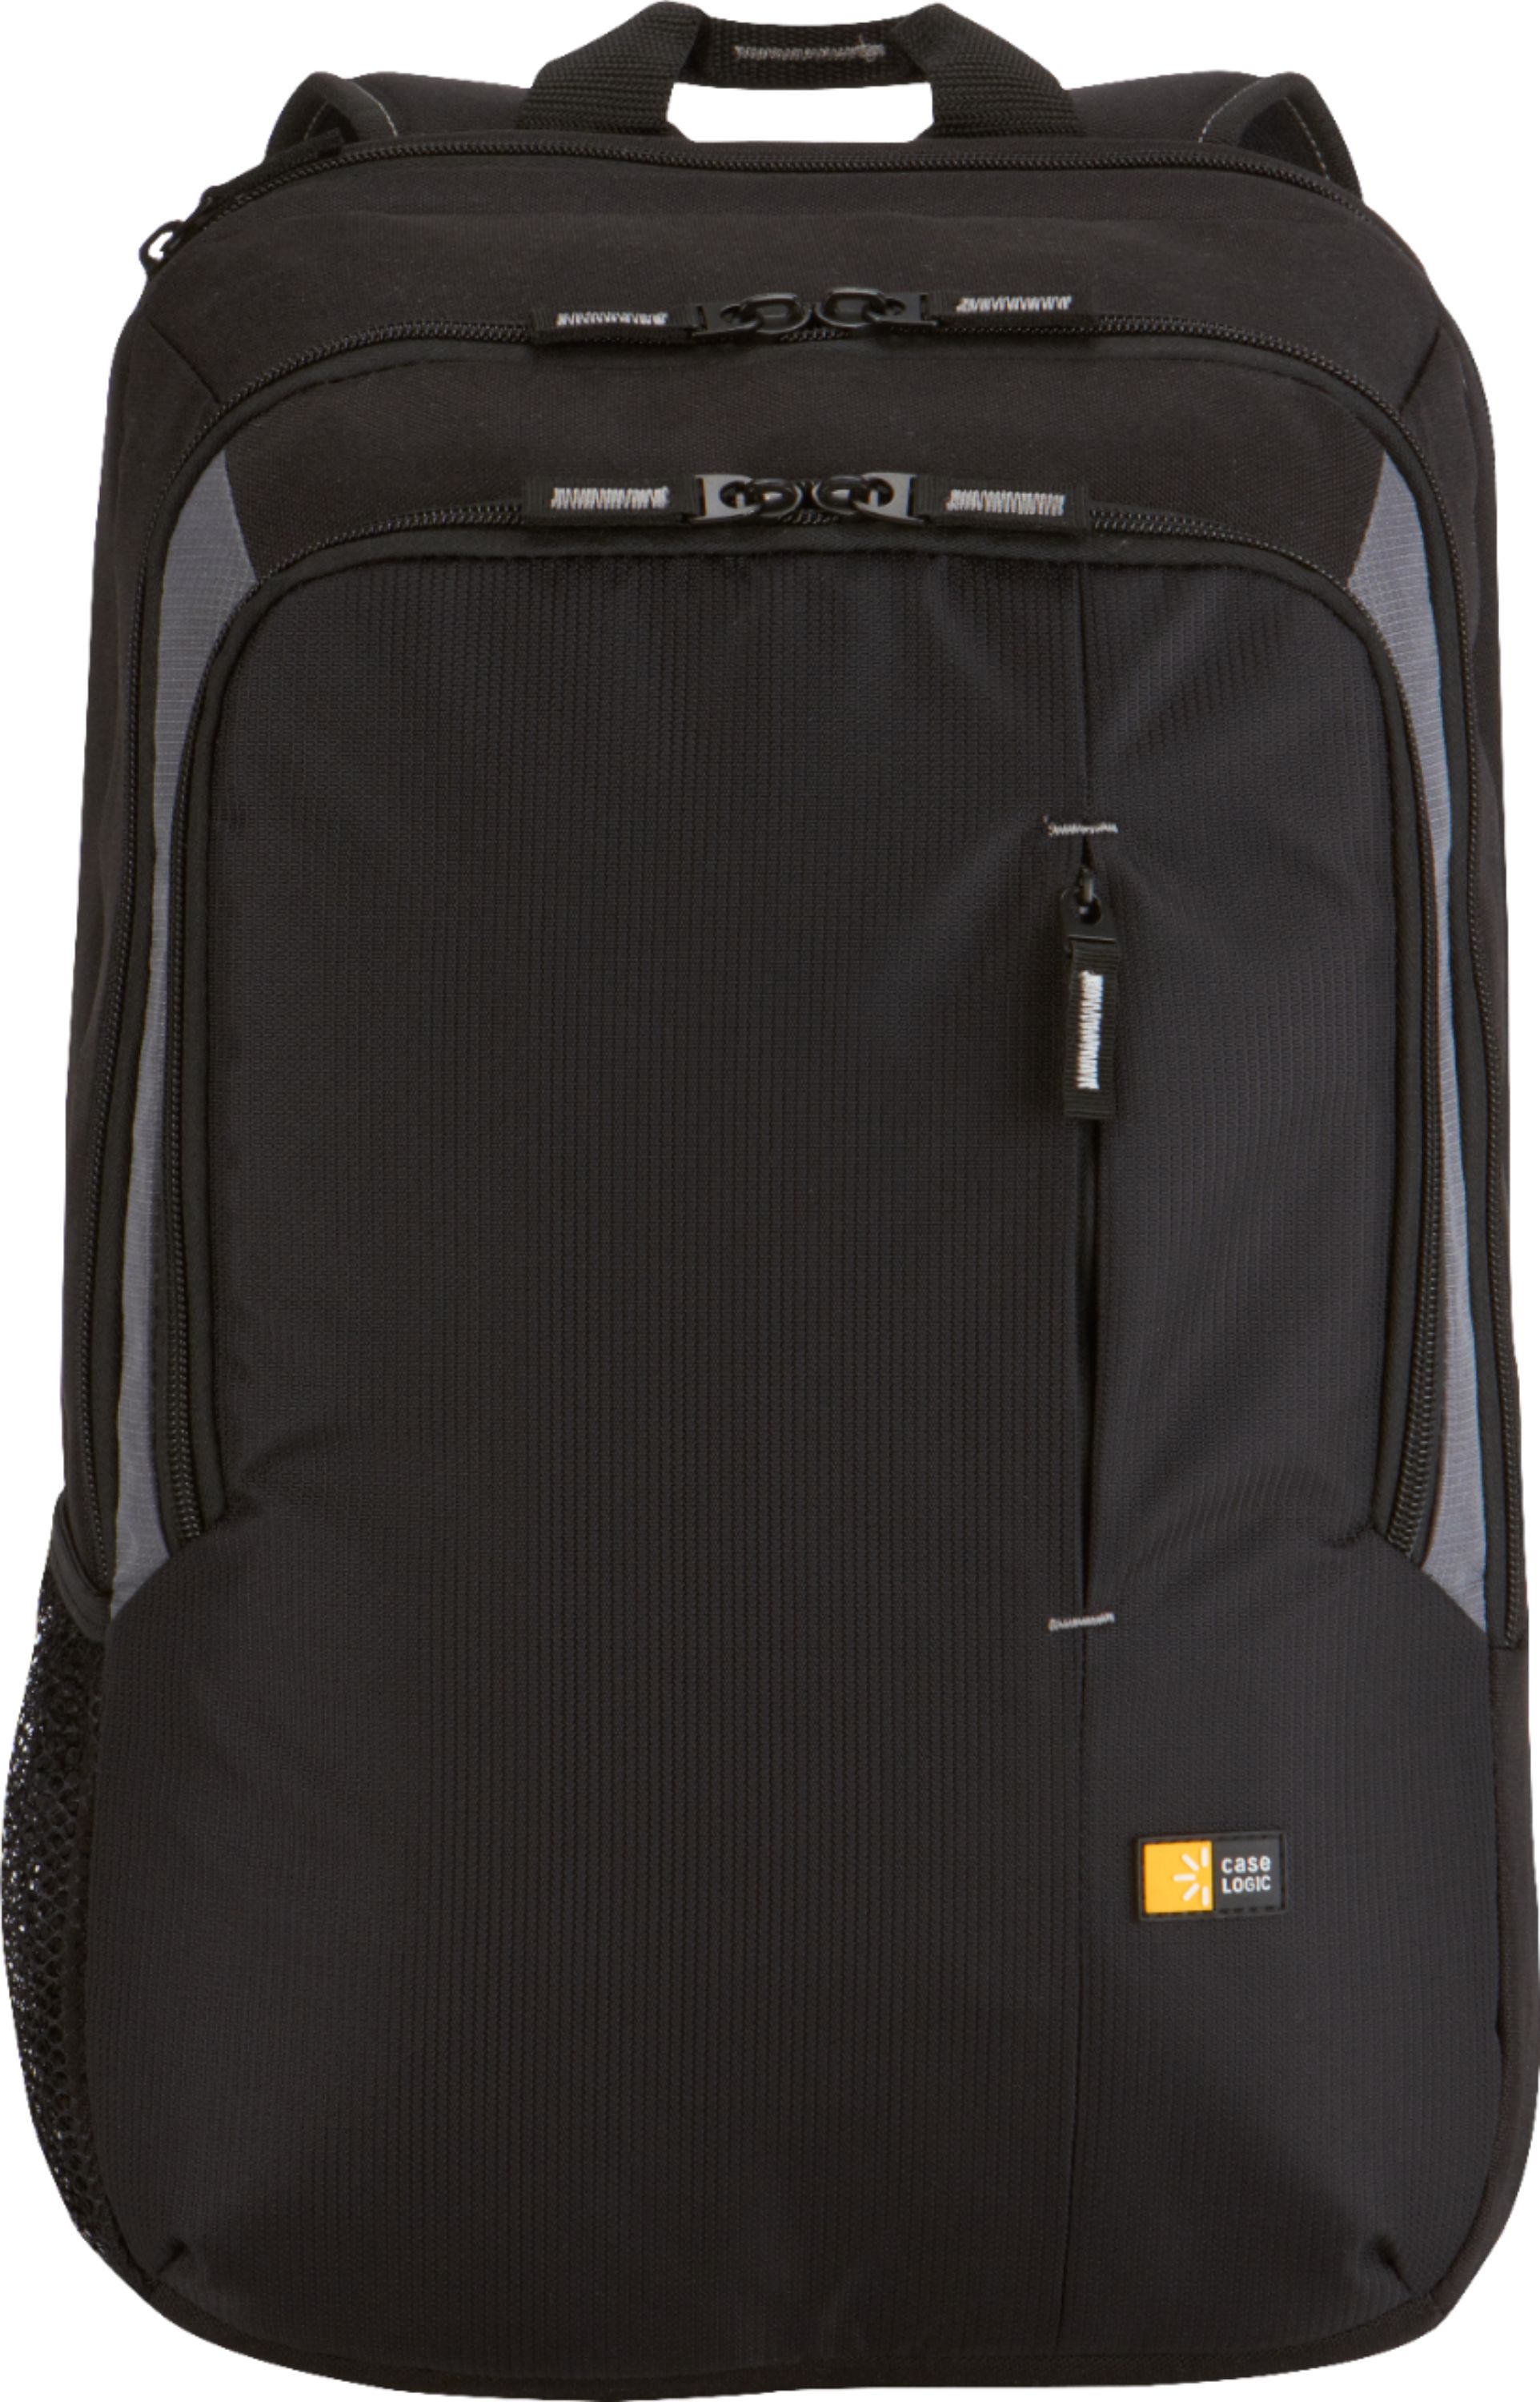 Achievement divorce argument Case Logic Backpack Laptop Case for 17" Laptop Black VNB-217 - Best Buy